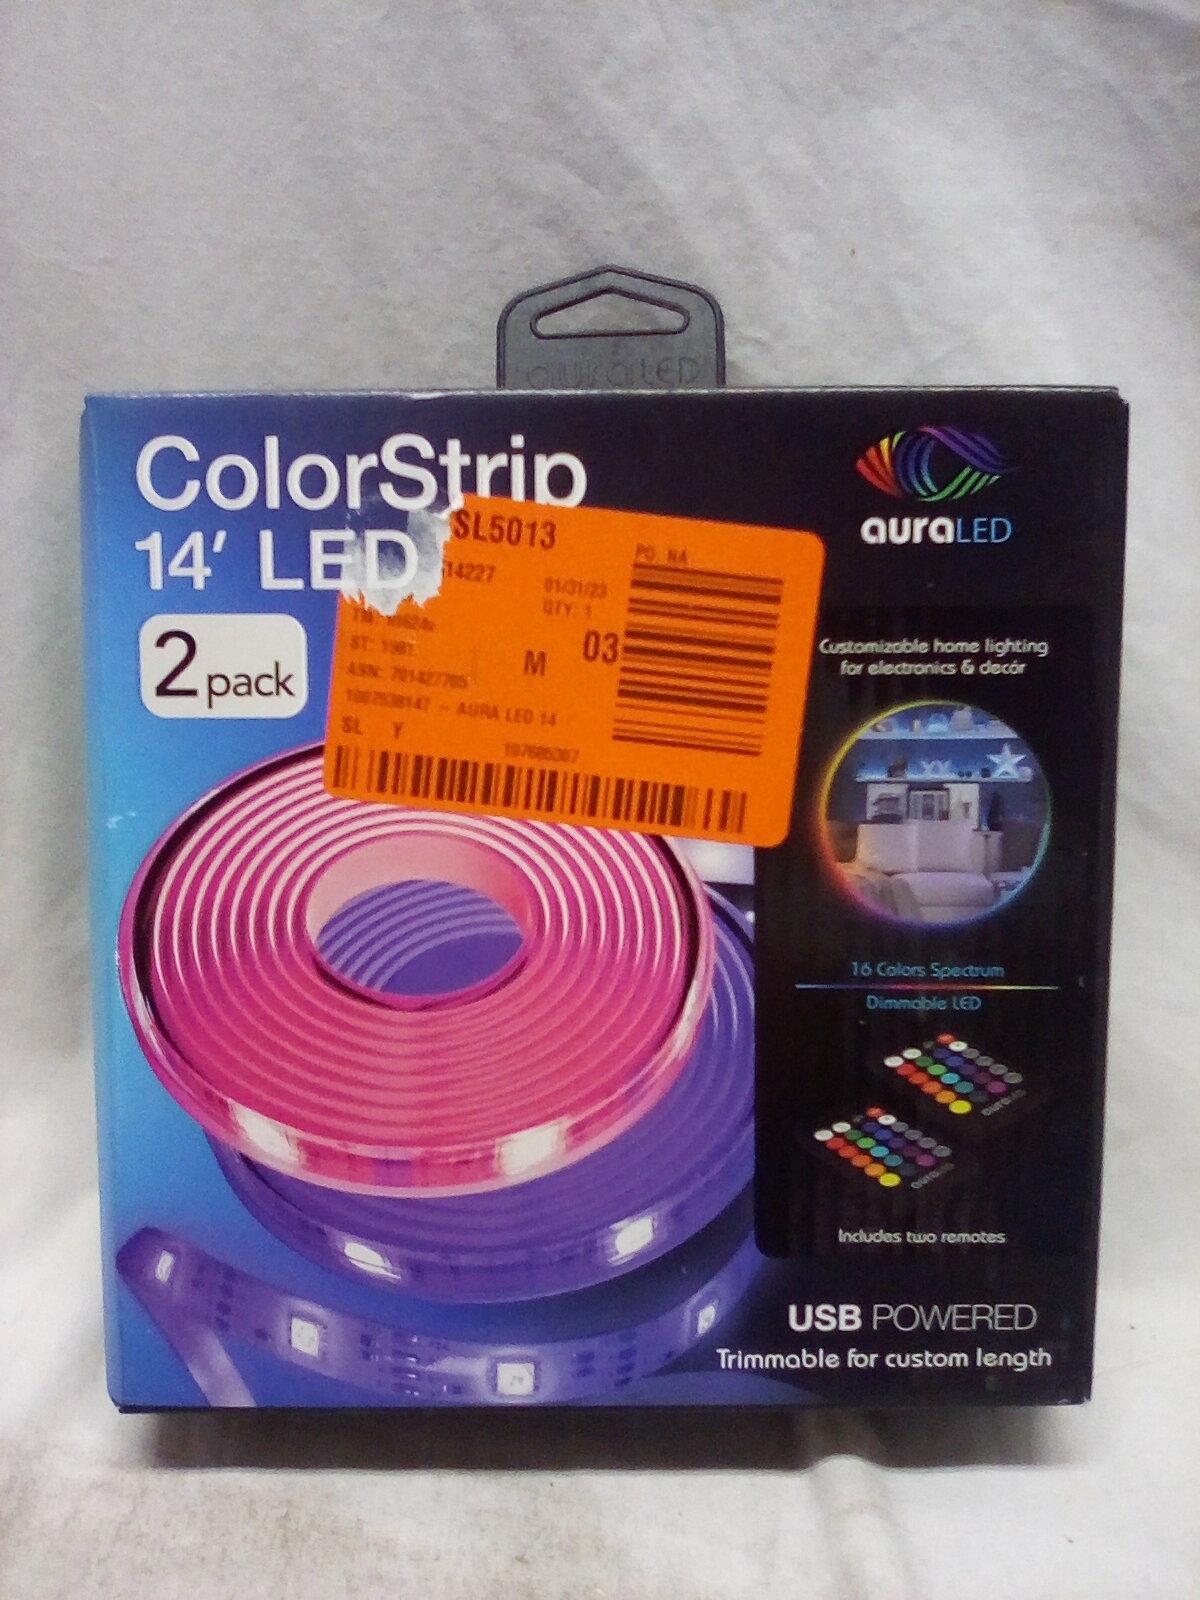 AuraLED ColorStrip 14' LED Light Kit 2 Pack